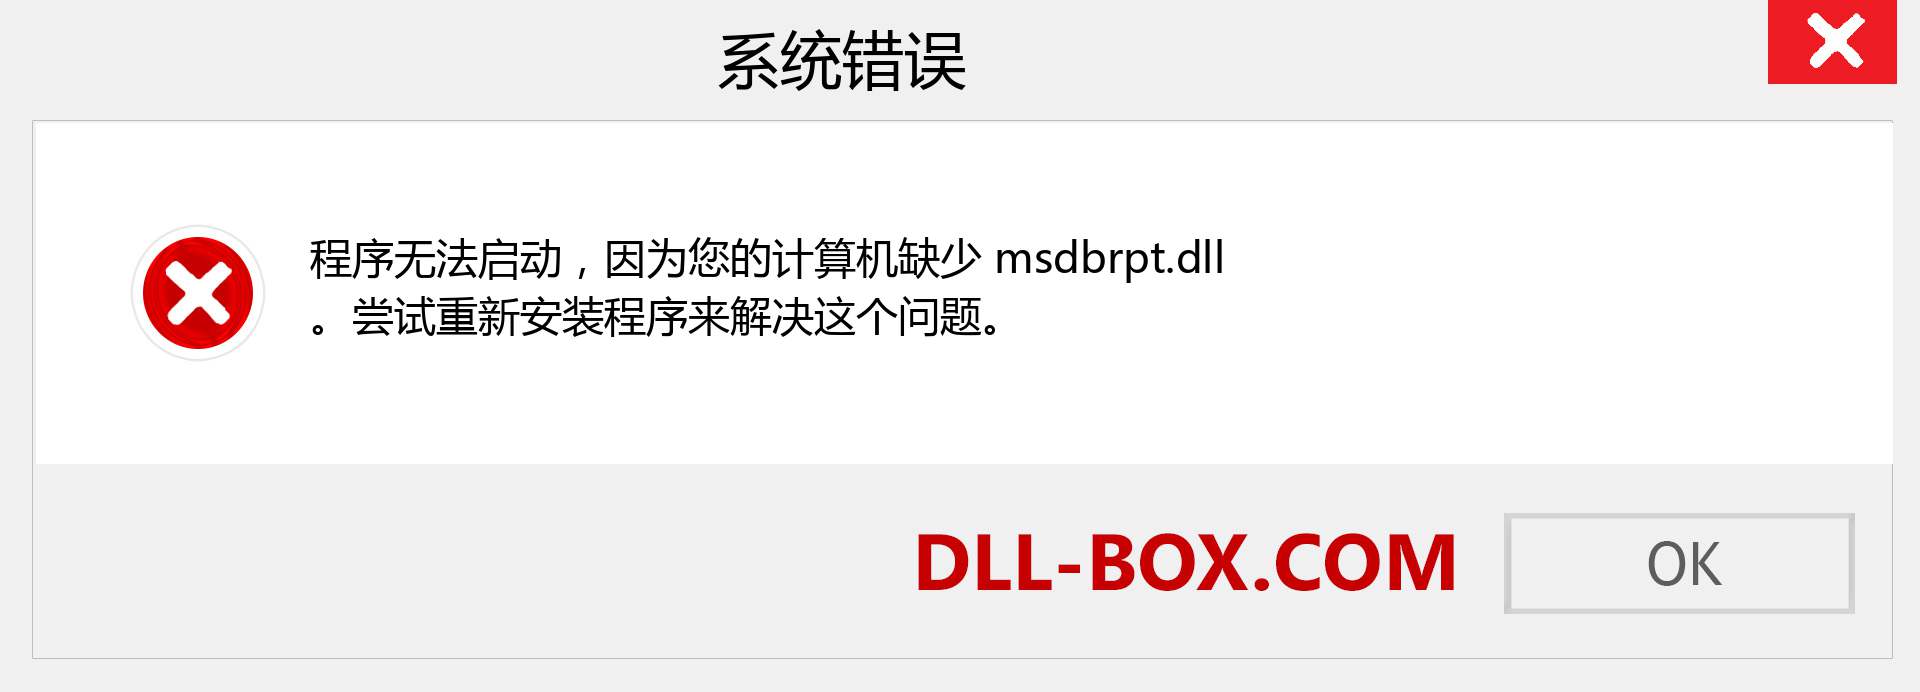 msdbrpt.dll 文件丢失？。 适用于 Windows 7、8、10 的下载 - 修复 Windows、照片、图像上的 msdbrpt dll 丢失错误